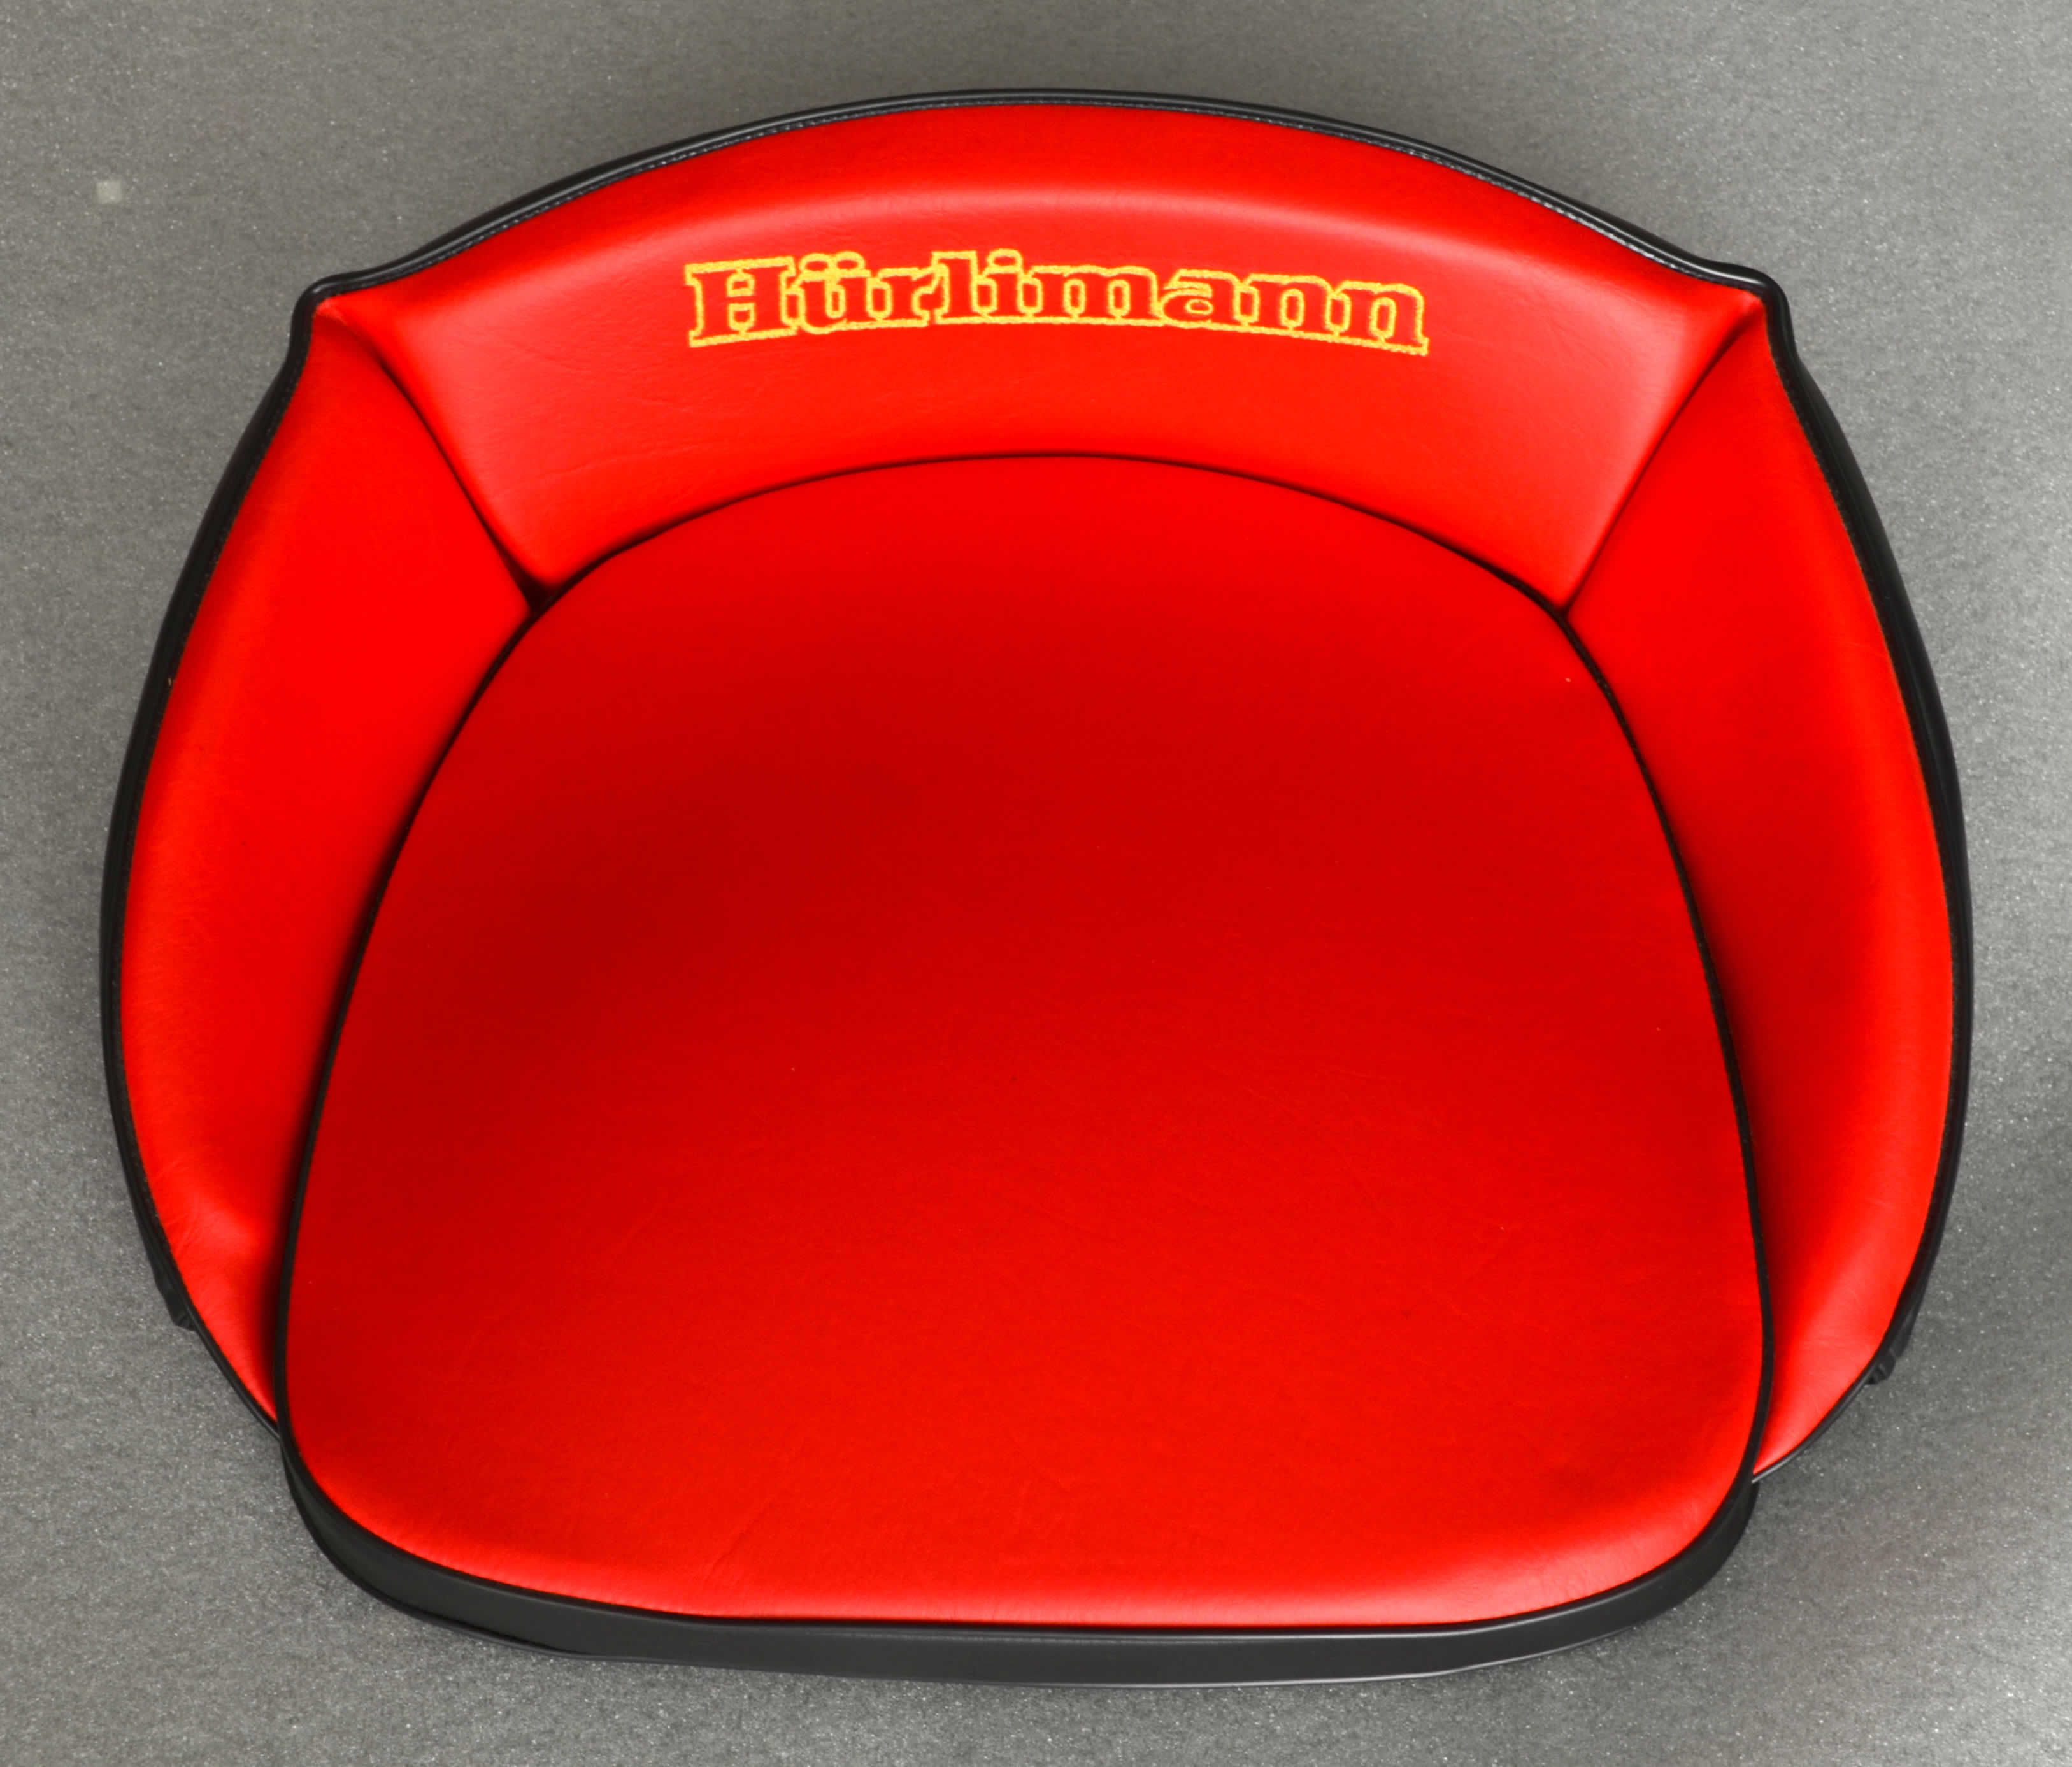 Traktor - Sitzkissen für Hürlimann rot mit Aufschrift gestickt